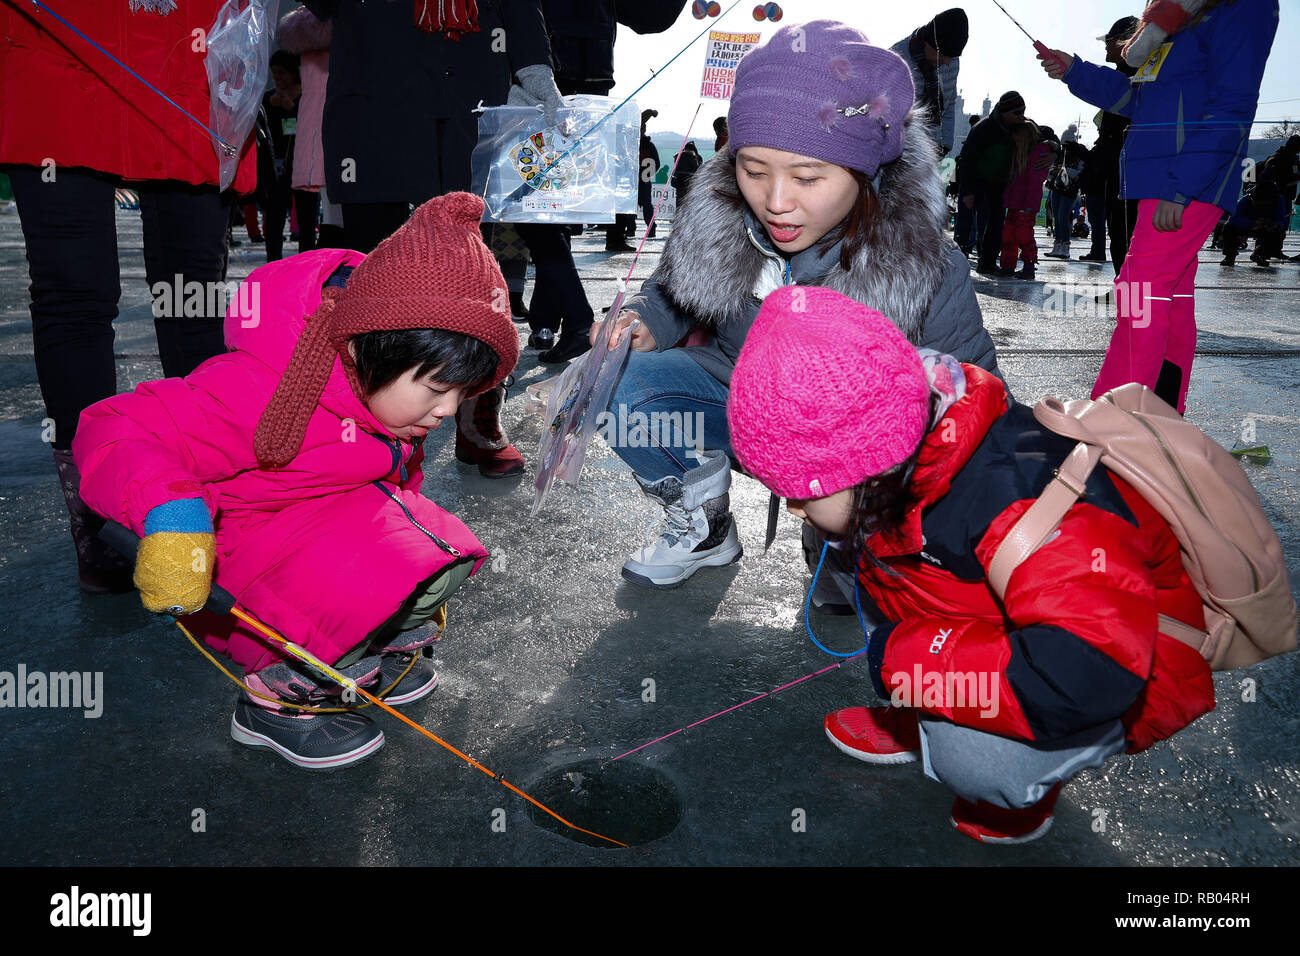 Hwacheon, Corea del Sur. 5 de enero, 2019. La gente pescar truchas en un río congelado durante el Festival de hielo Sancheoneo de Hwacheon, Corea del Sur, el 5 de enero de 2019. Como uno de los mayores eventos de invierno en Corea del Sur, el anual Festival de tres semanas atrae a la gente a los congelados Hwacheon River, en donde los organizadores de pesca taladrar agujeros en el hielo y la liberación de truchas en el río durante el periodo que dura el festival. Este año el festival dura desde el 5 de enero al 27 de enero. Crédito: Wang Jingqiang/Xinhua/Alamy Live News Foto de stock